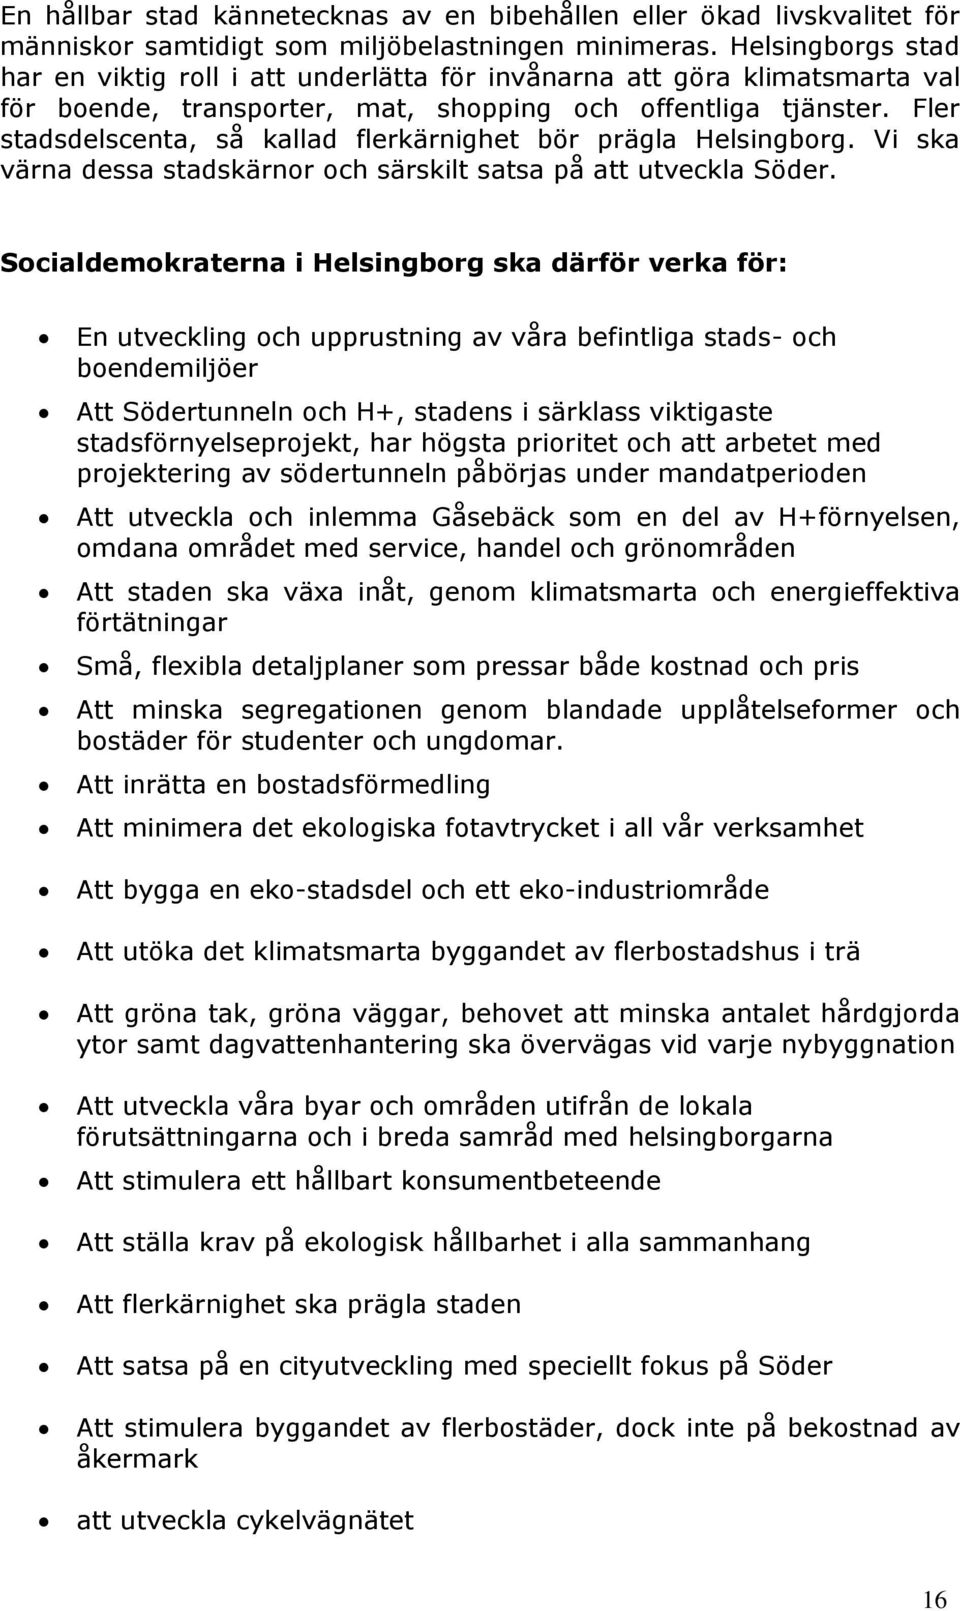 Fler stadsdelscenta, så kallad flerkärnighet bör prägla Helsingborg. Vi ska värna dessa stadskärnor och särskilt satsa på att utveckla Söder.